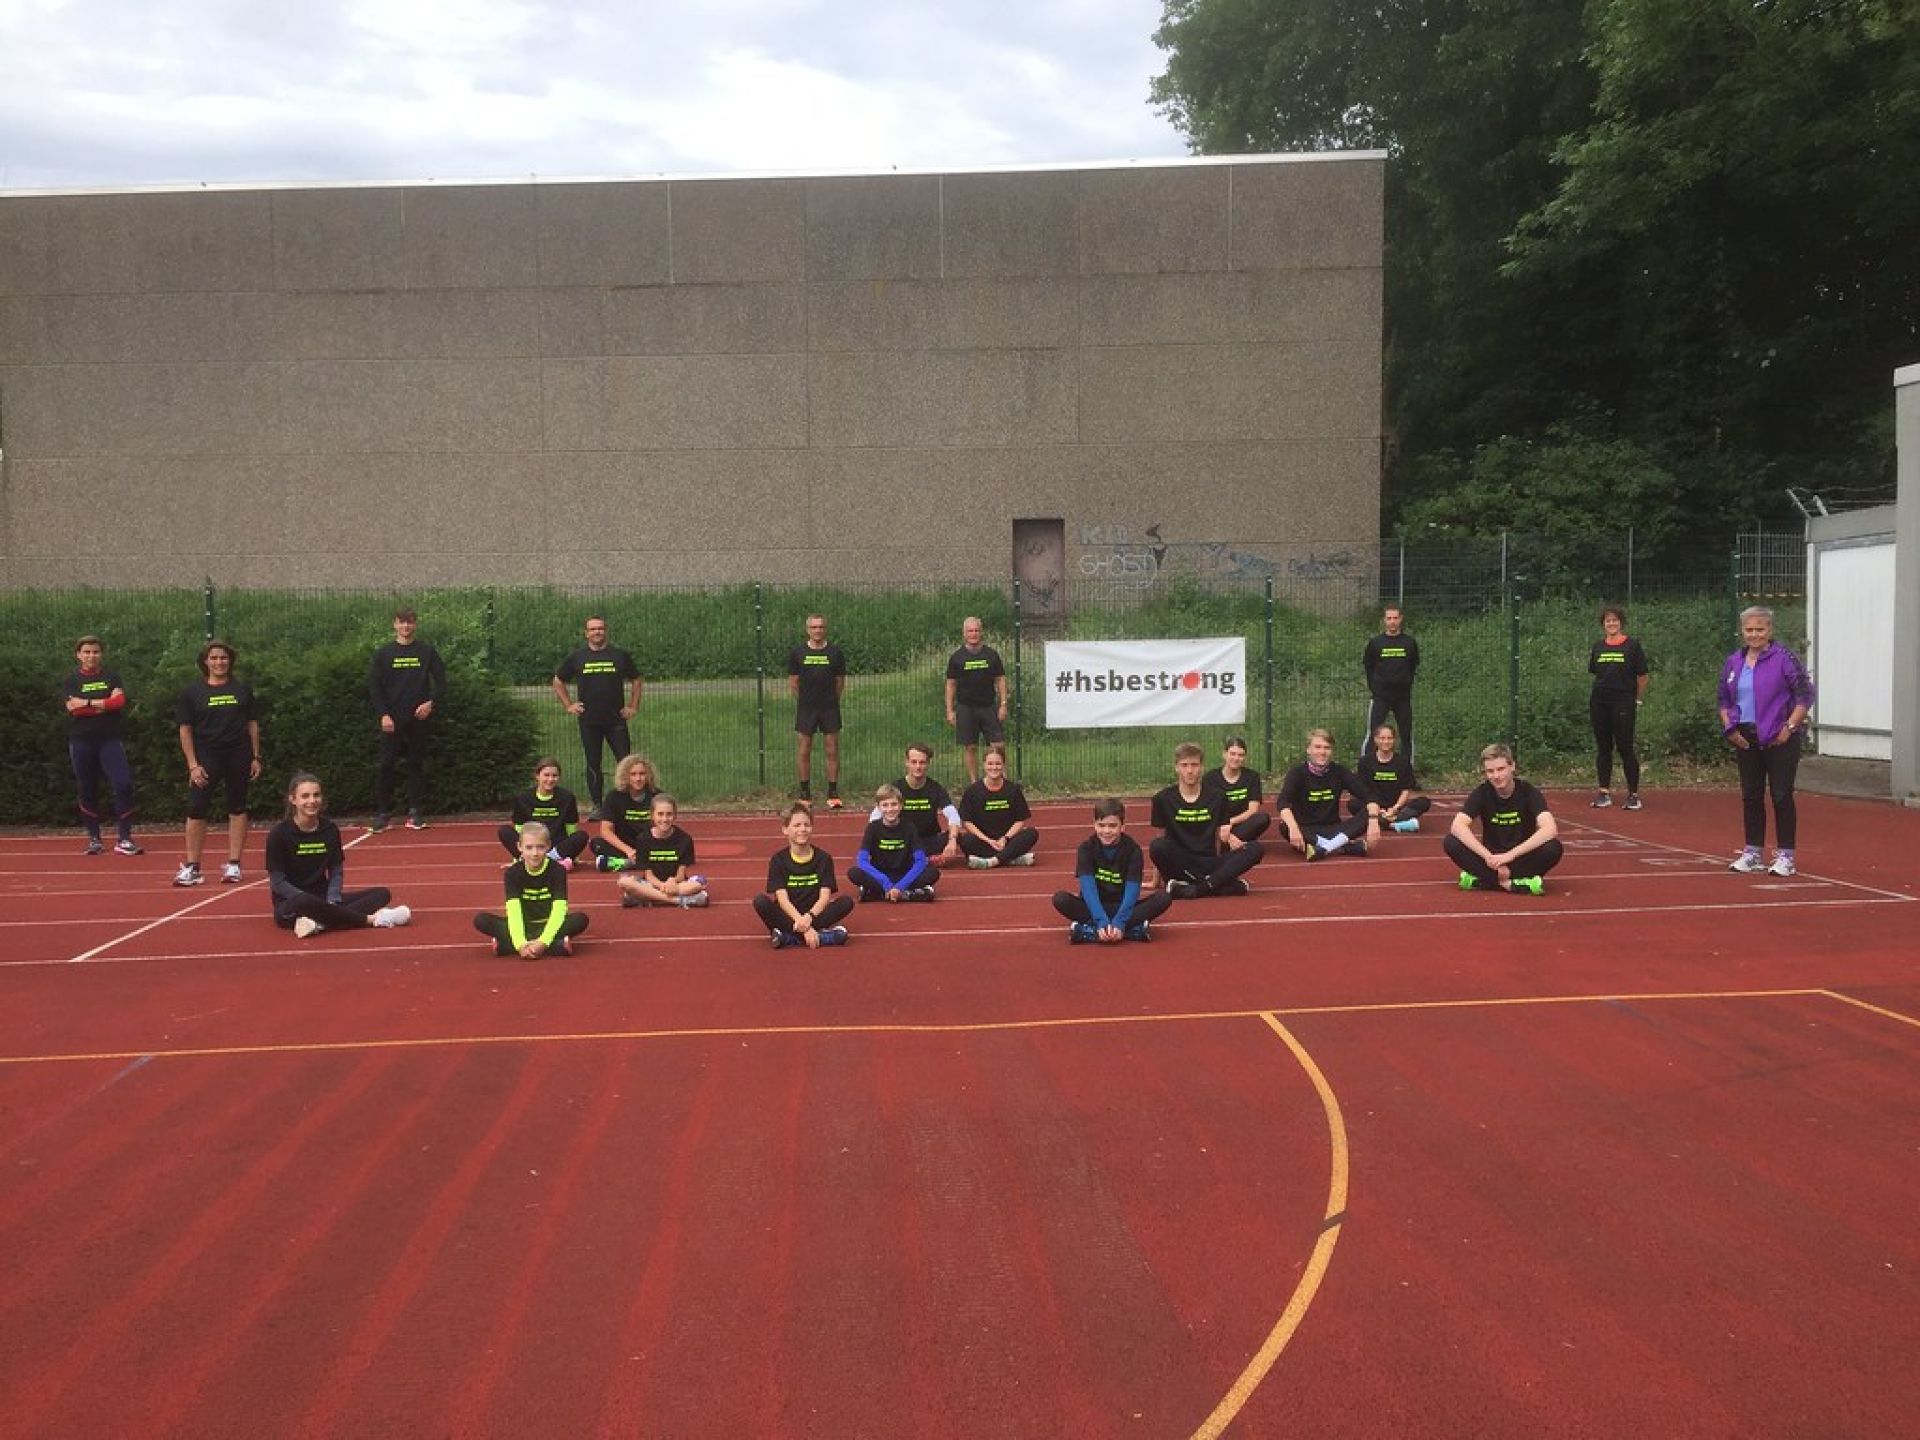 SC Myhl Leichtathletik plant im August zwei Wettkämpfe in Heinsberg